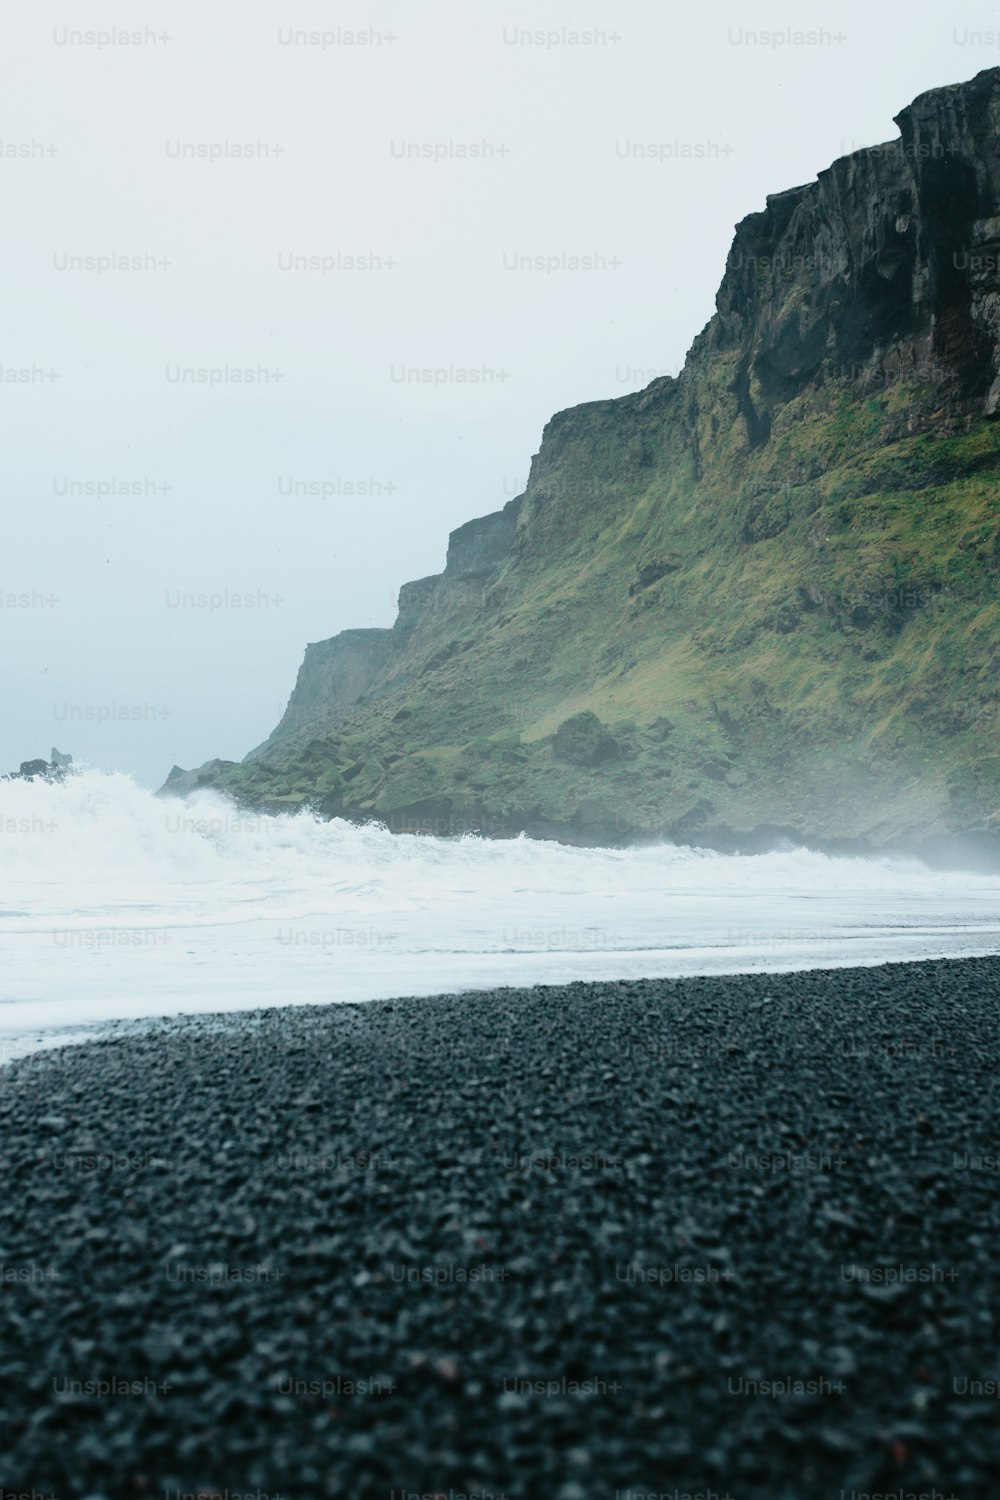 Una persona parada en una playa cerca del océano